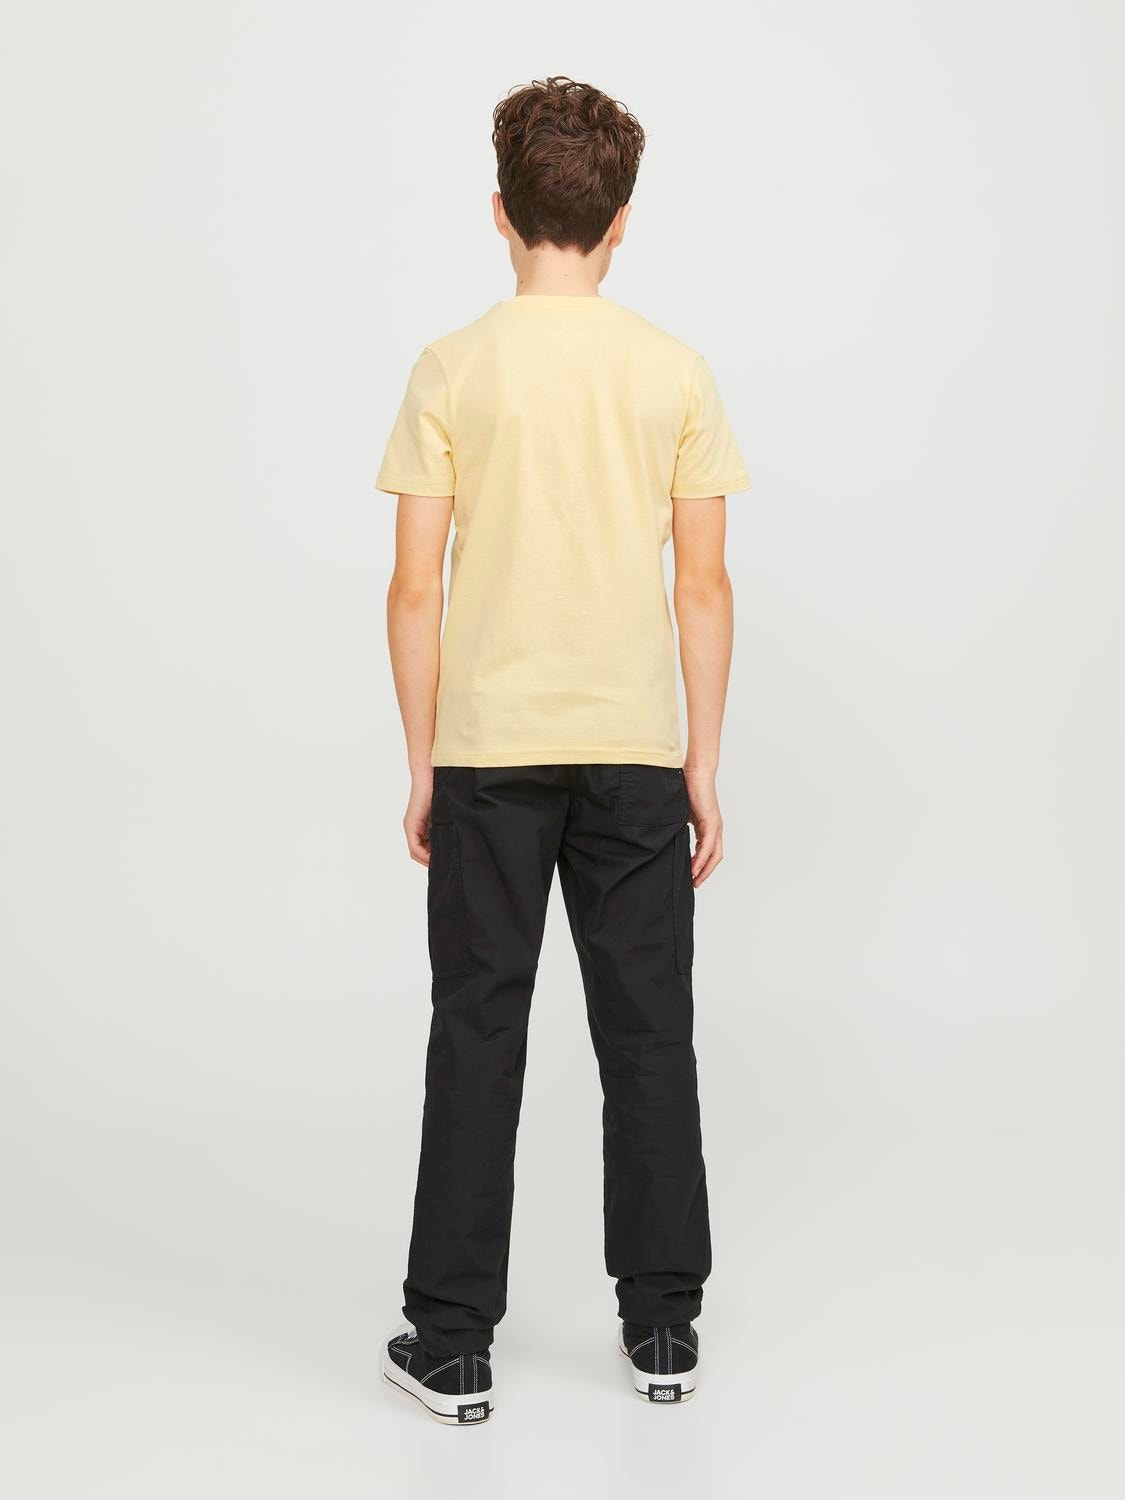 Jack & Jones Trykk T-skjorte For gutter -Italian Straw - 12253965